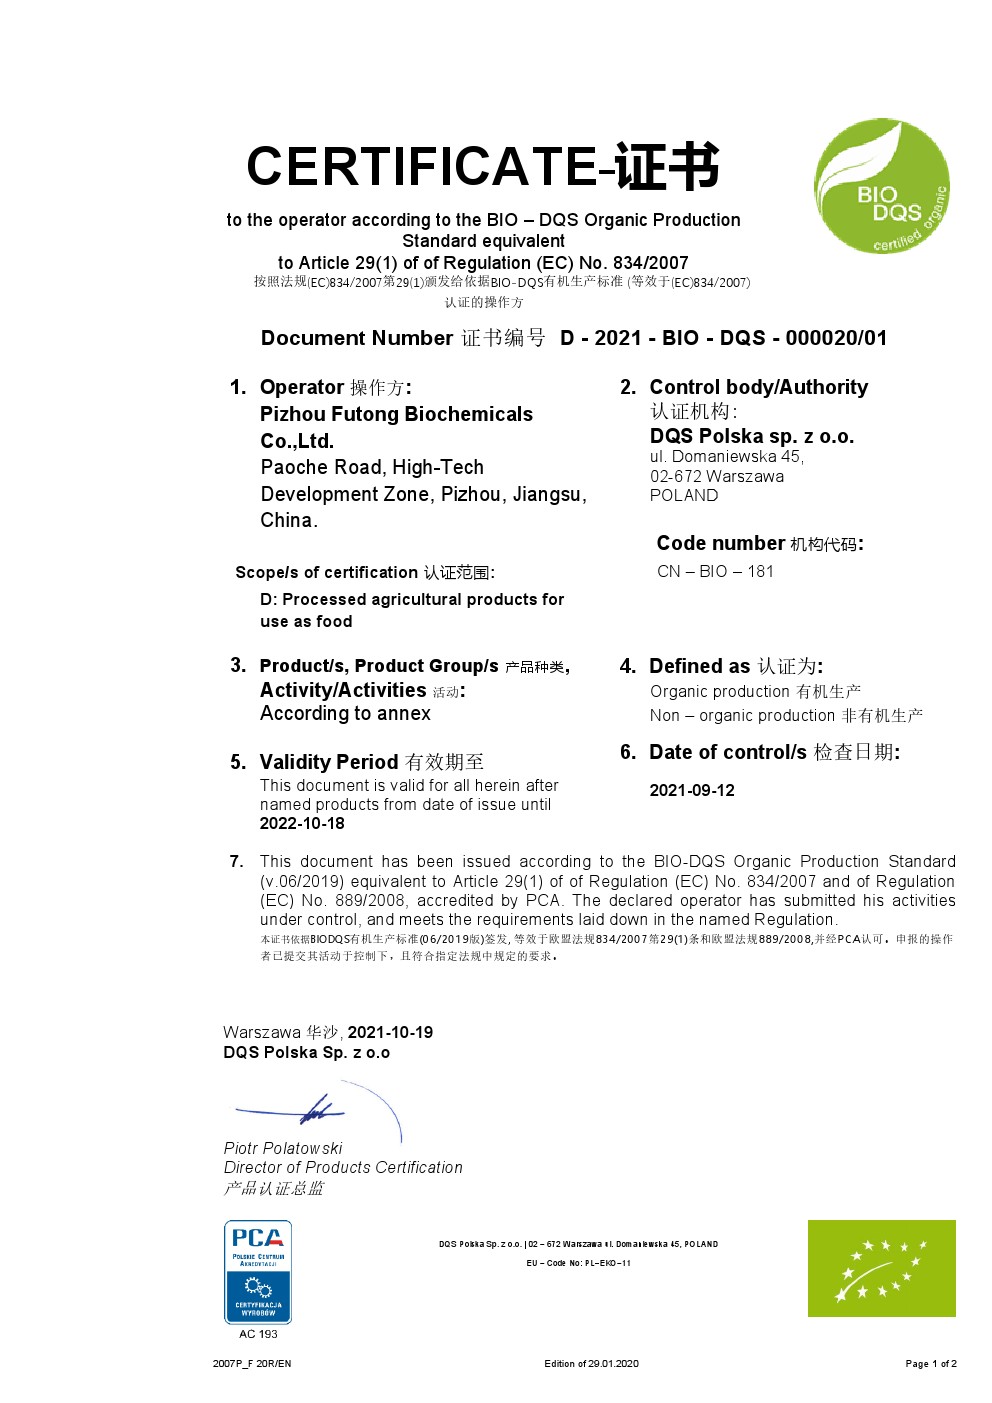 EU organic certificate